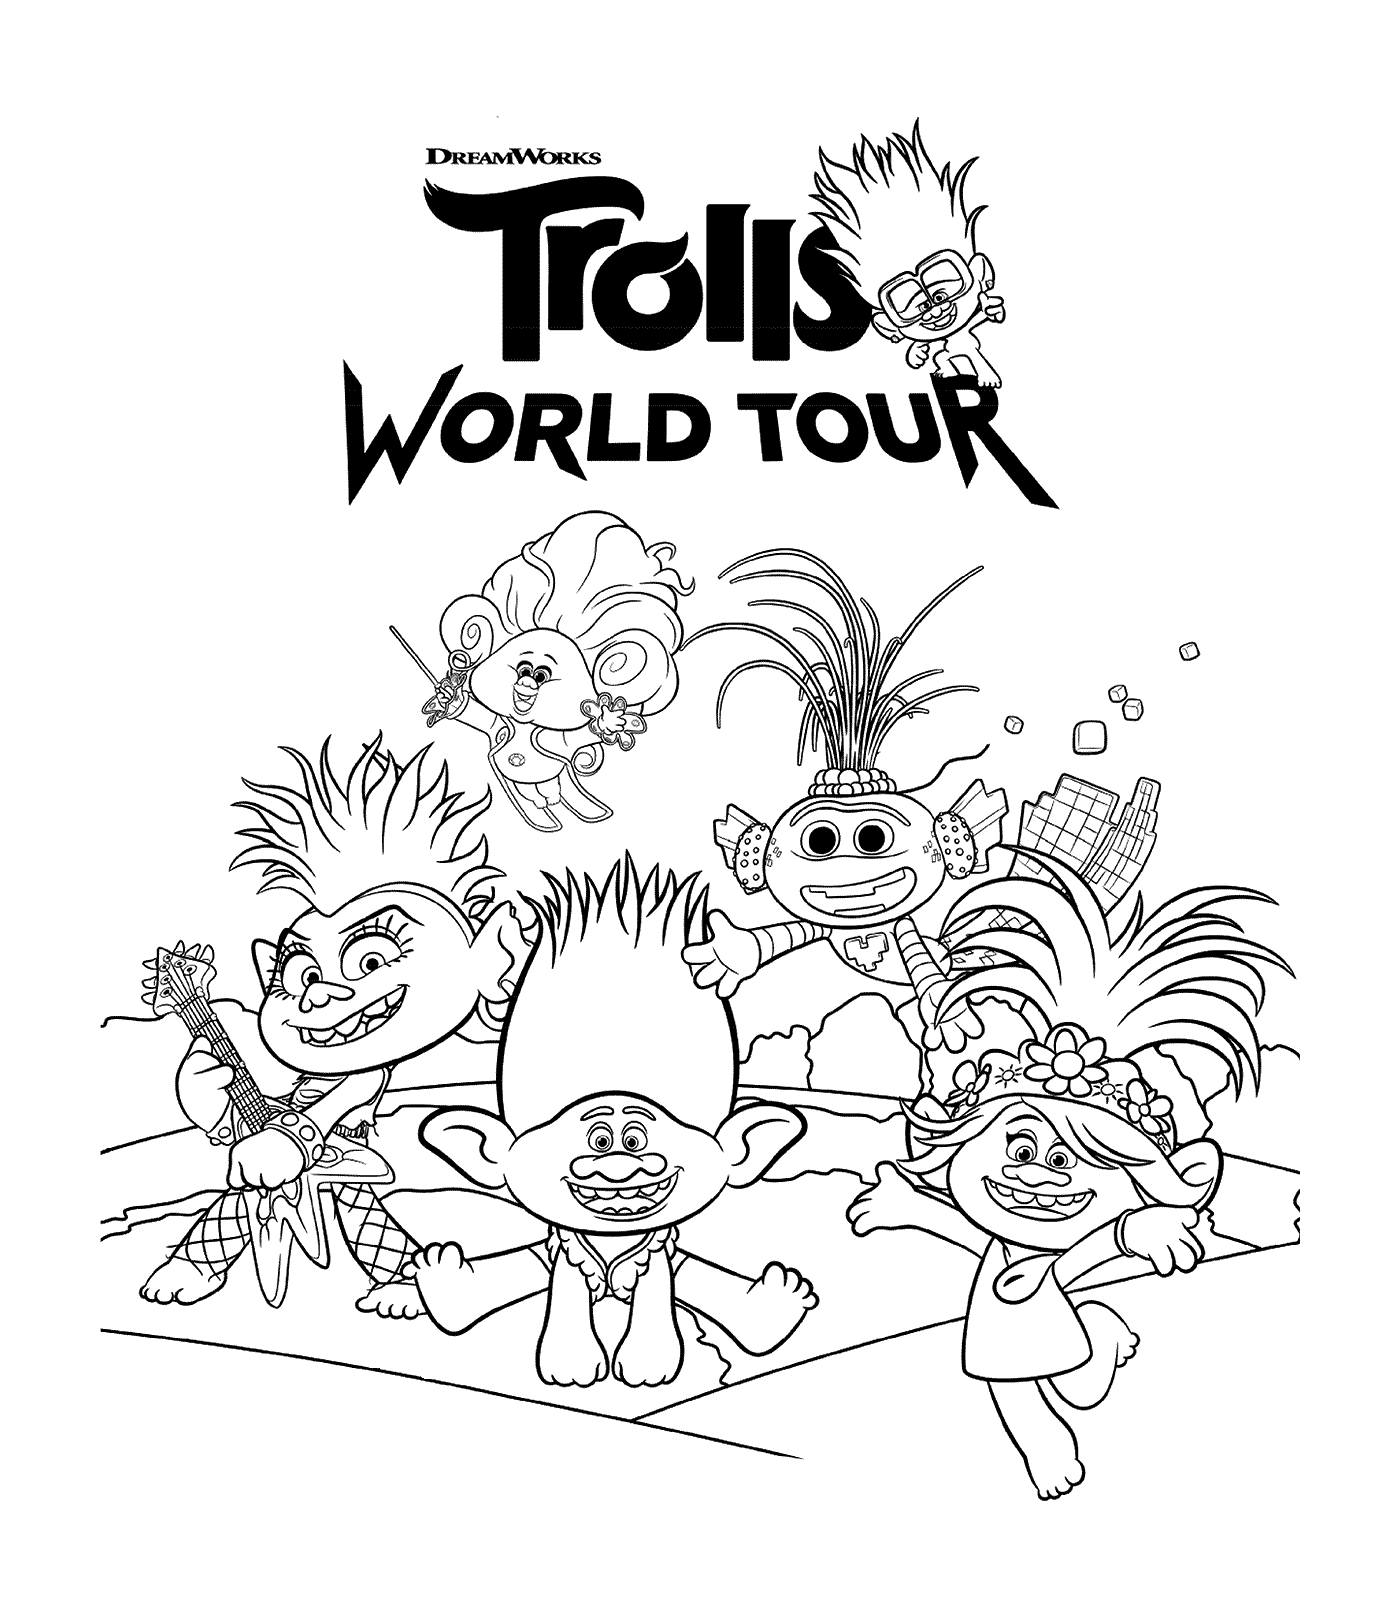  Trolls trolls en DreamWorks Trolls 2 Tour Mundial 